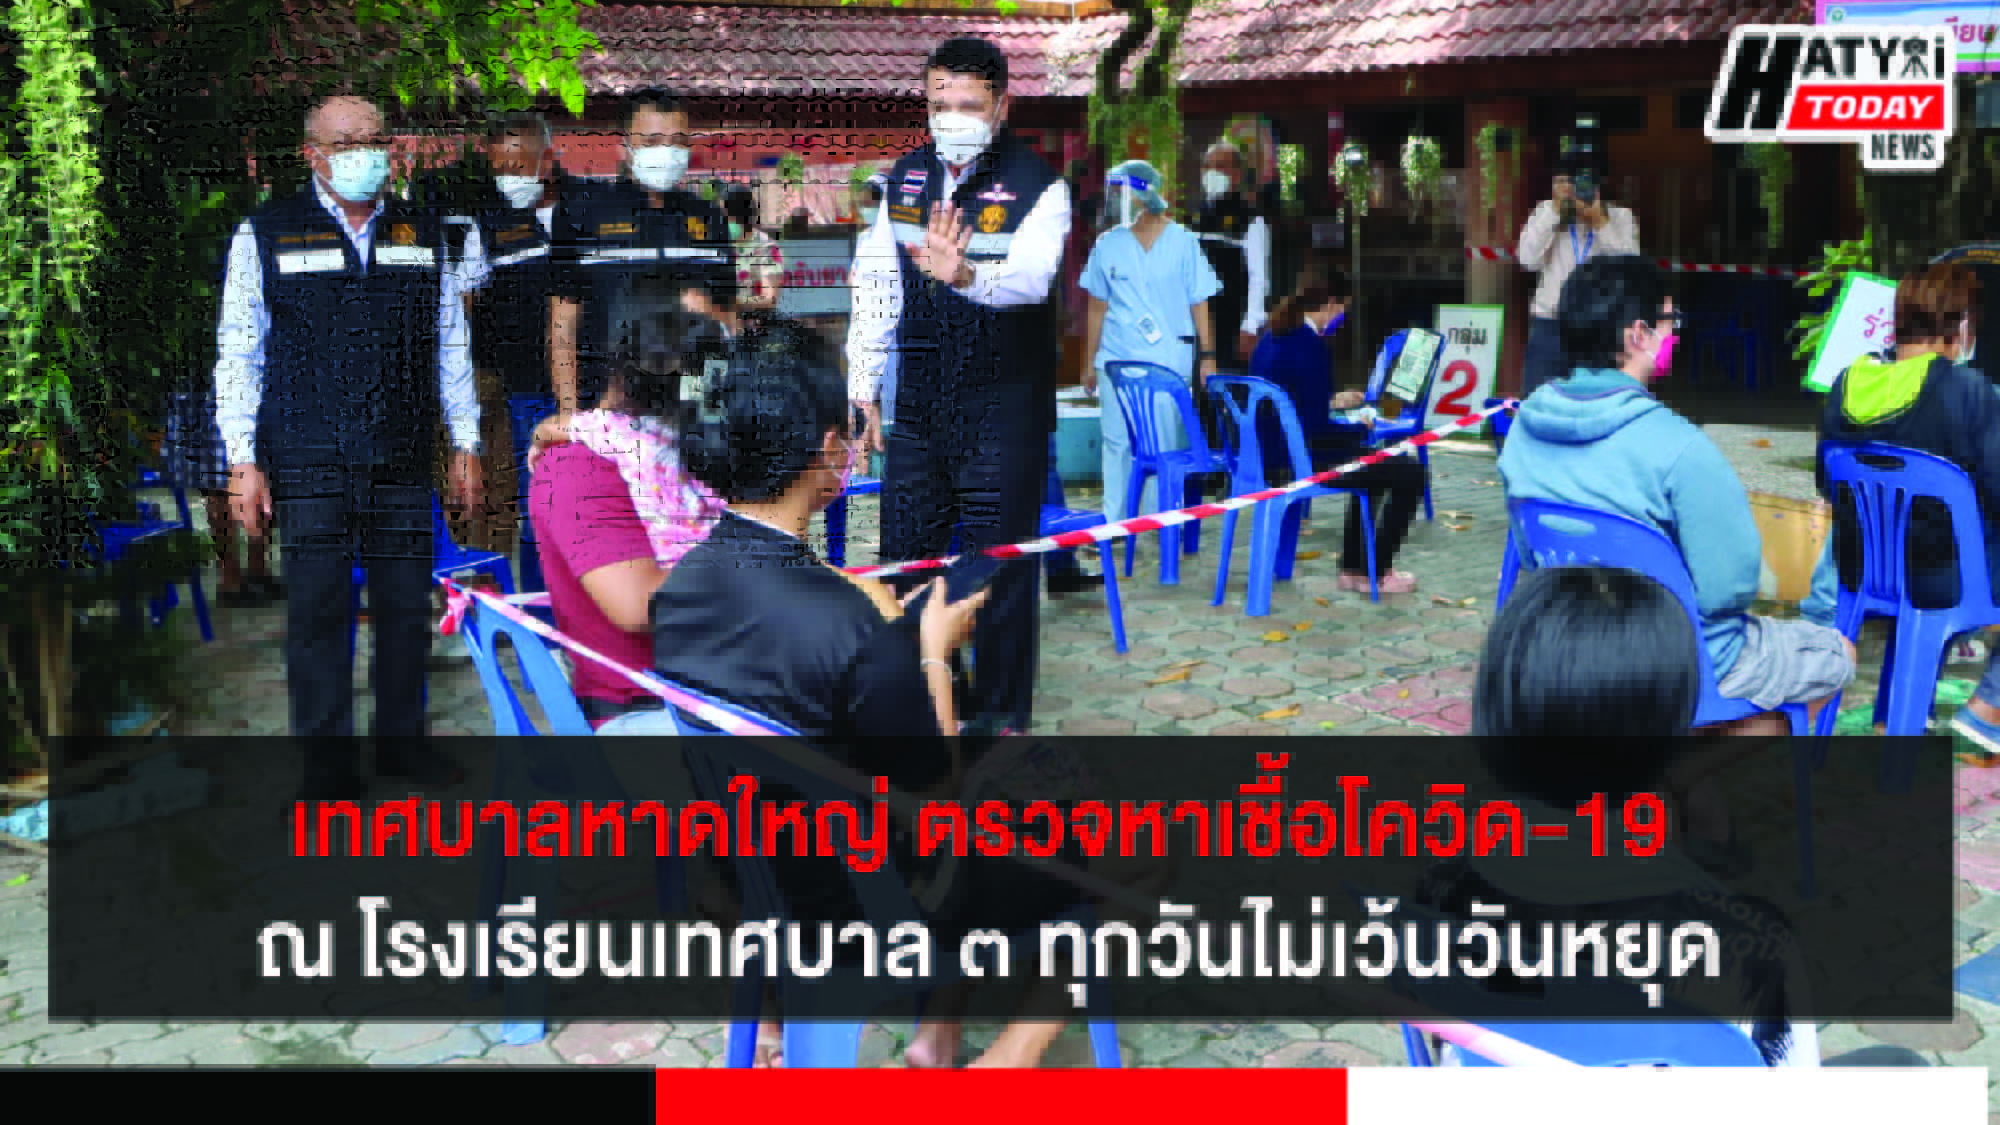 เทศบาลนครหาดใหญ่ บริการตรวจหาเชื้อโควิด-19 ณ ศาลาไทยโรงเรียนเทศบาล 3 ทุกวันไม่เว้นวันหยุดราชการ